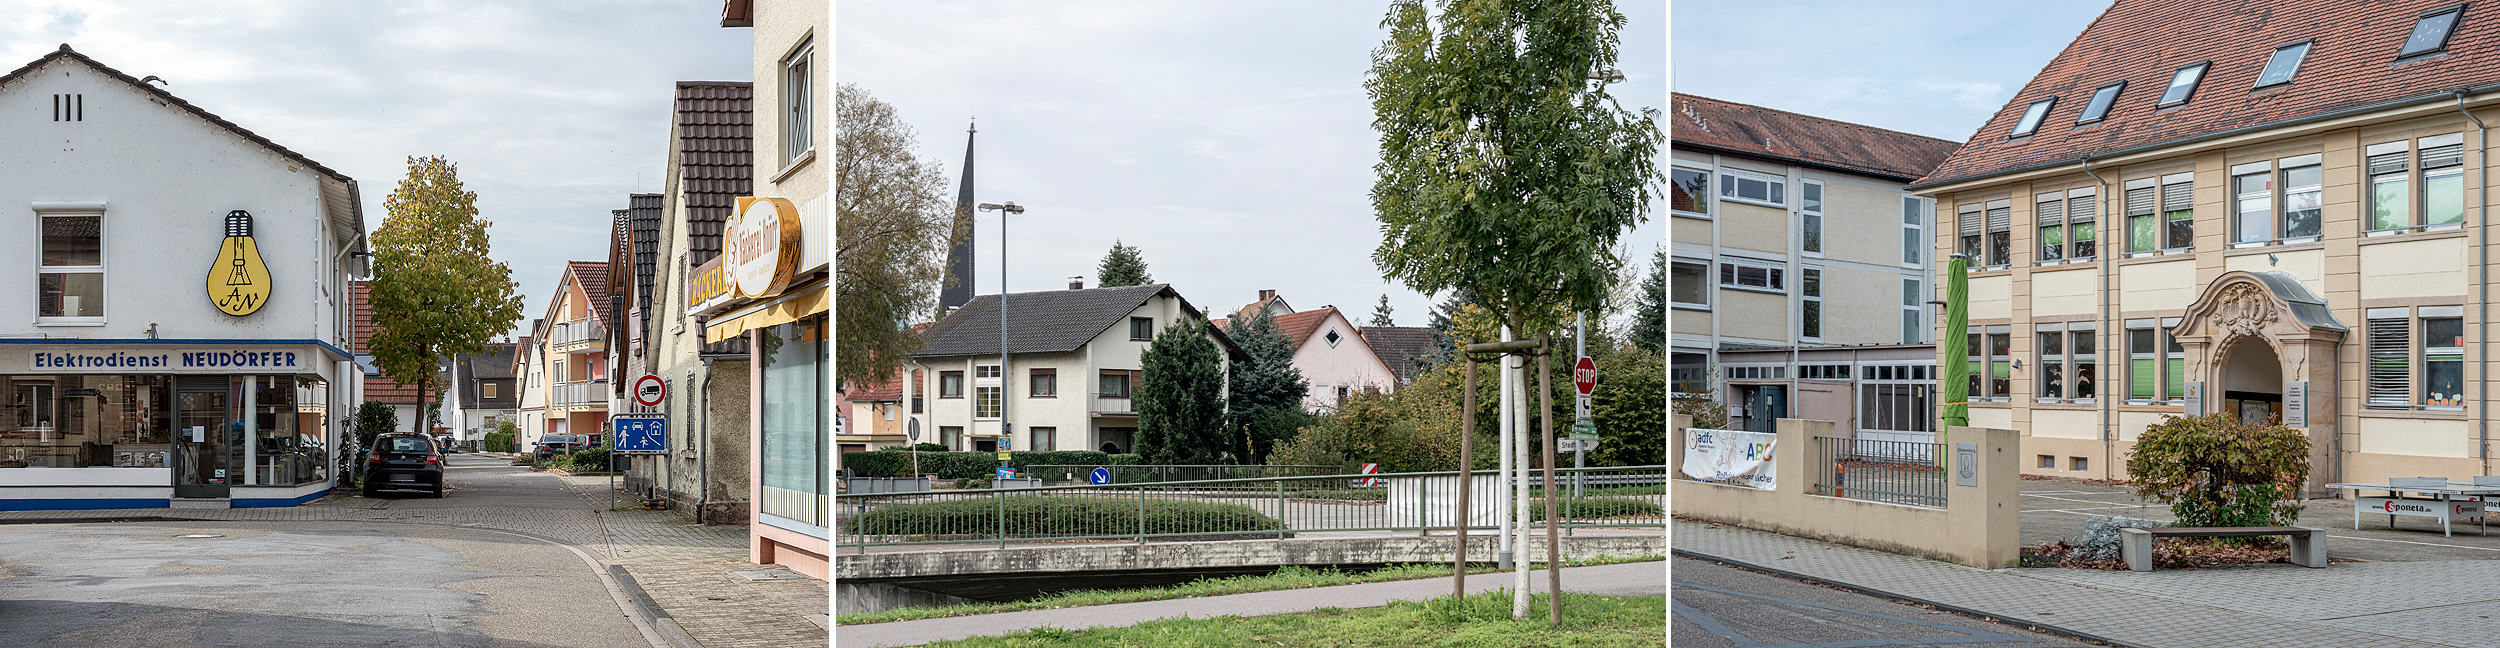 Collage aus drei Bildern mit Häusern in Niederbühl